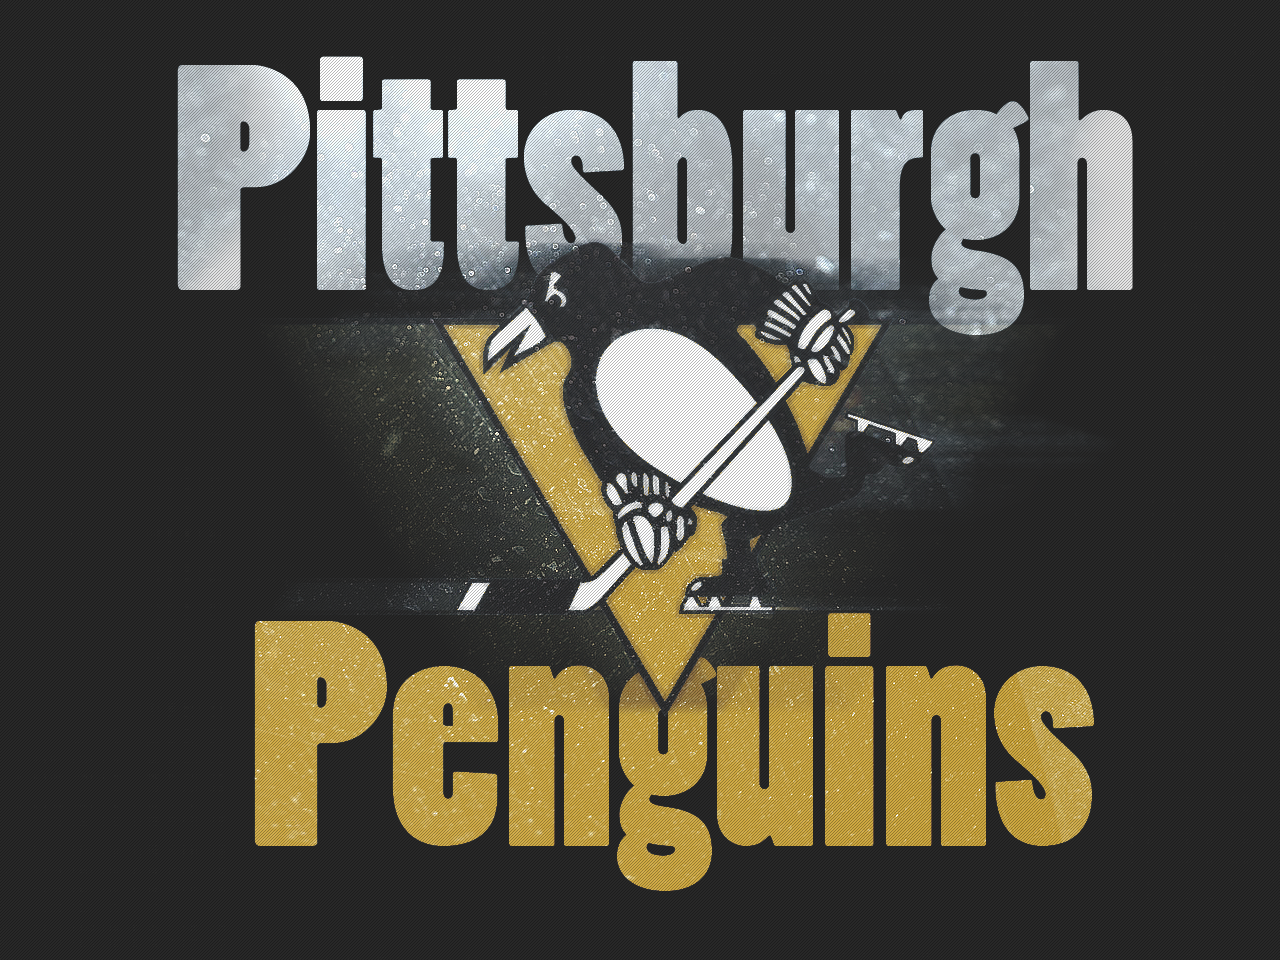 48+] Pittsburgh Penguins Wallpaper 1920x1080 - WallpaperSafari